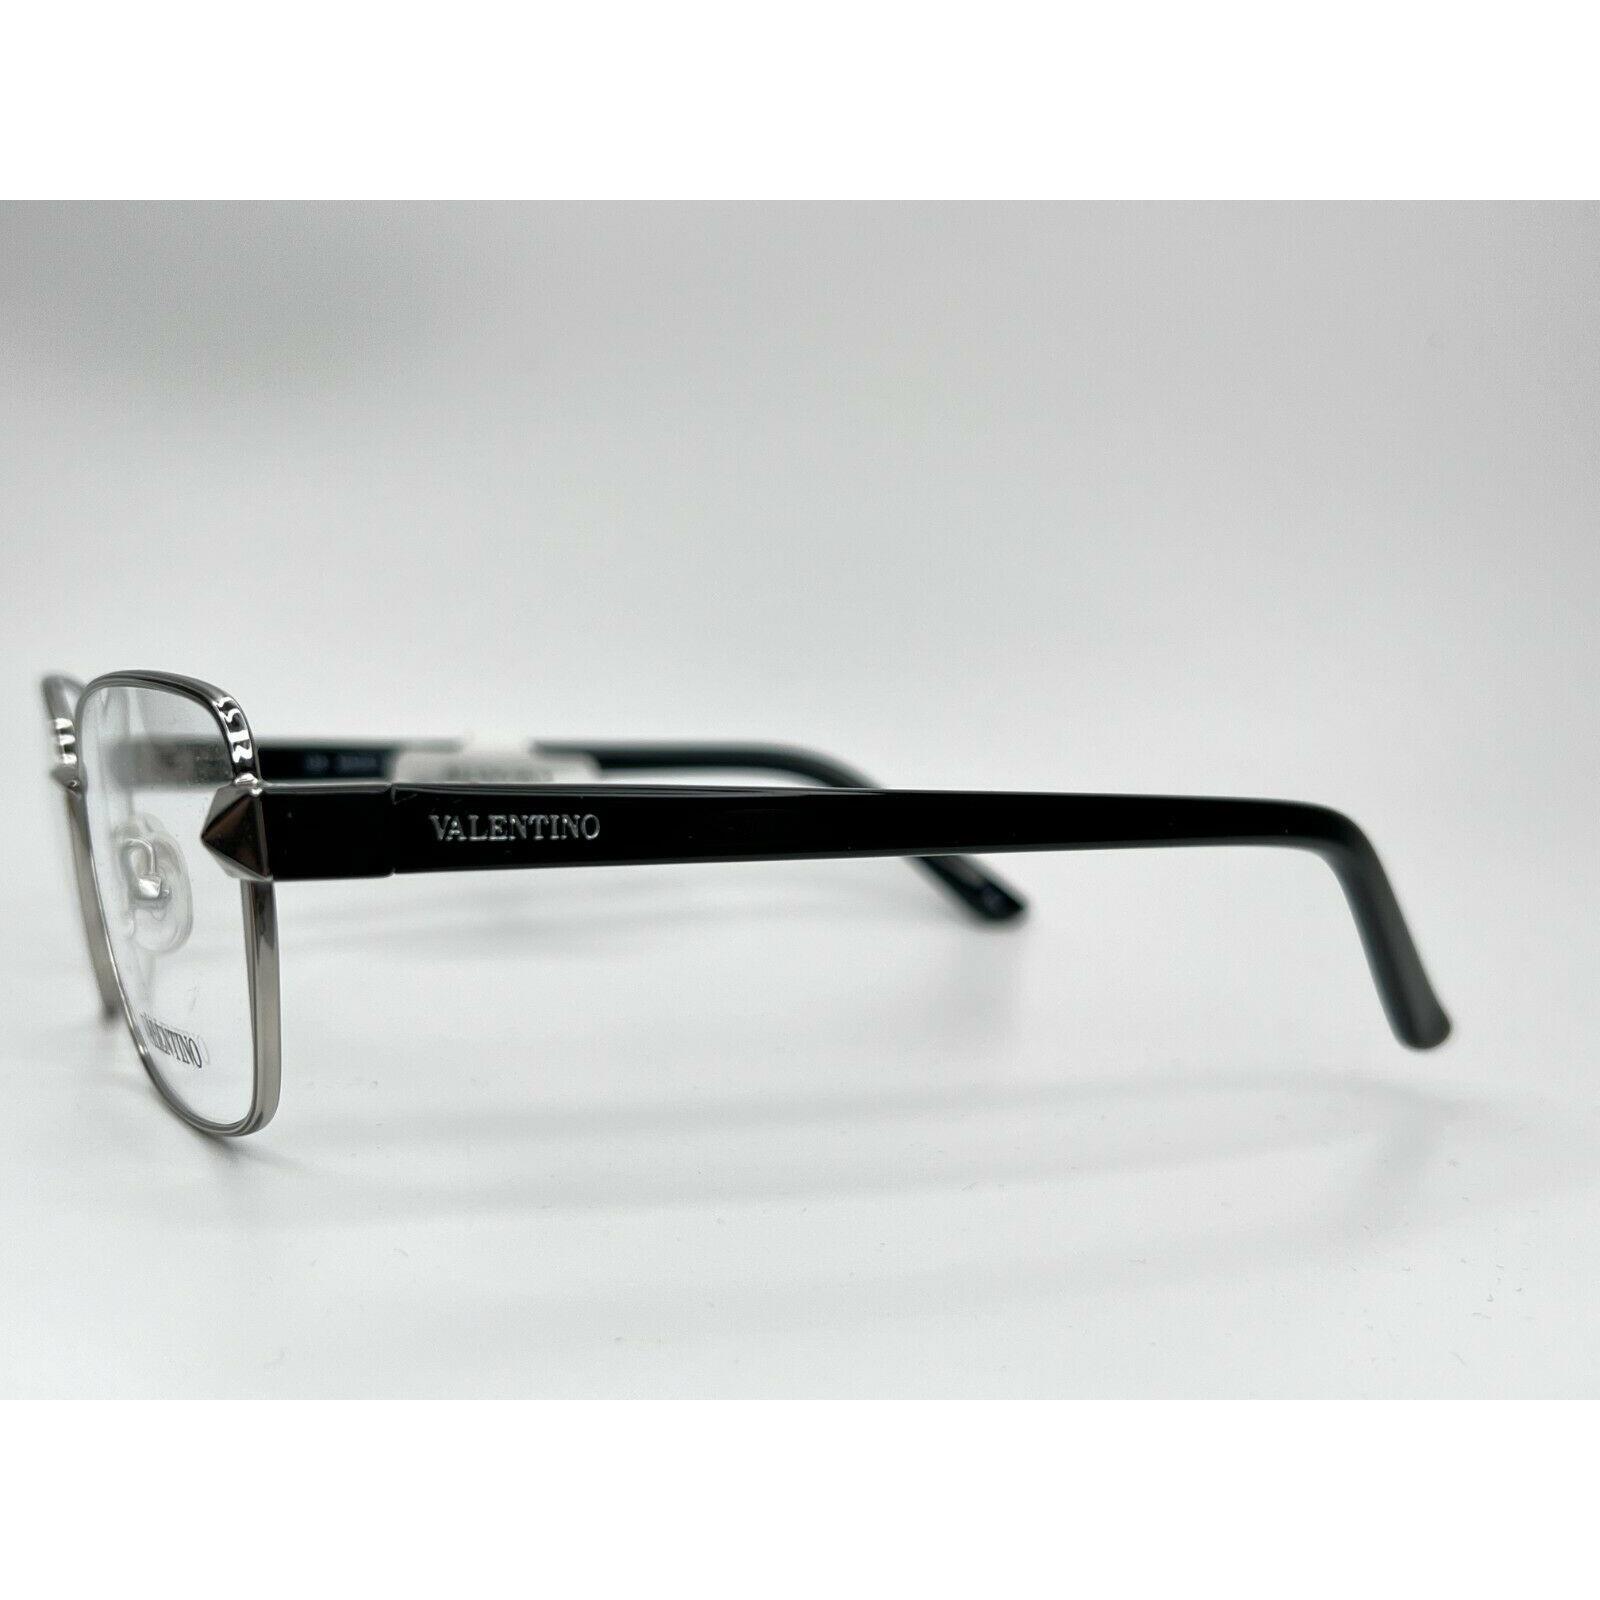 Valentino eyeglasses  - Silver Frame 2